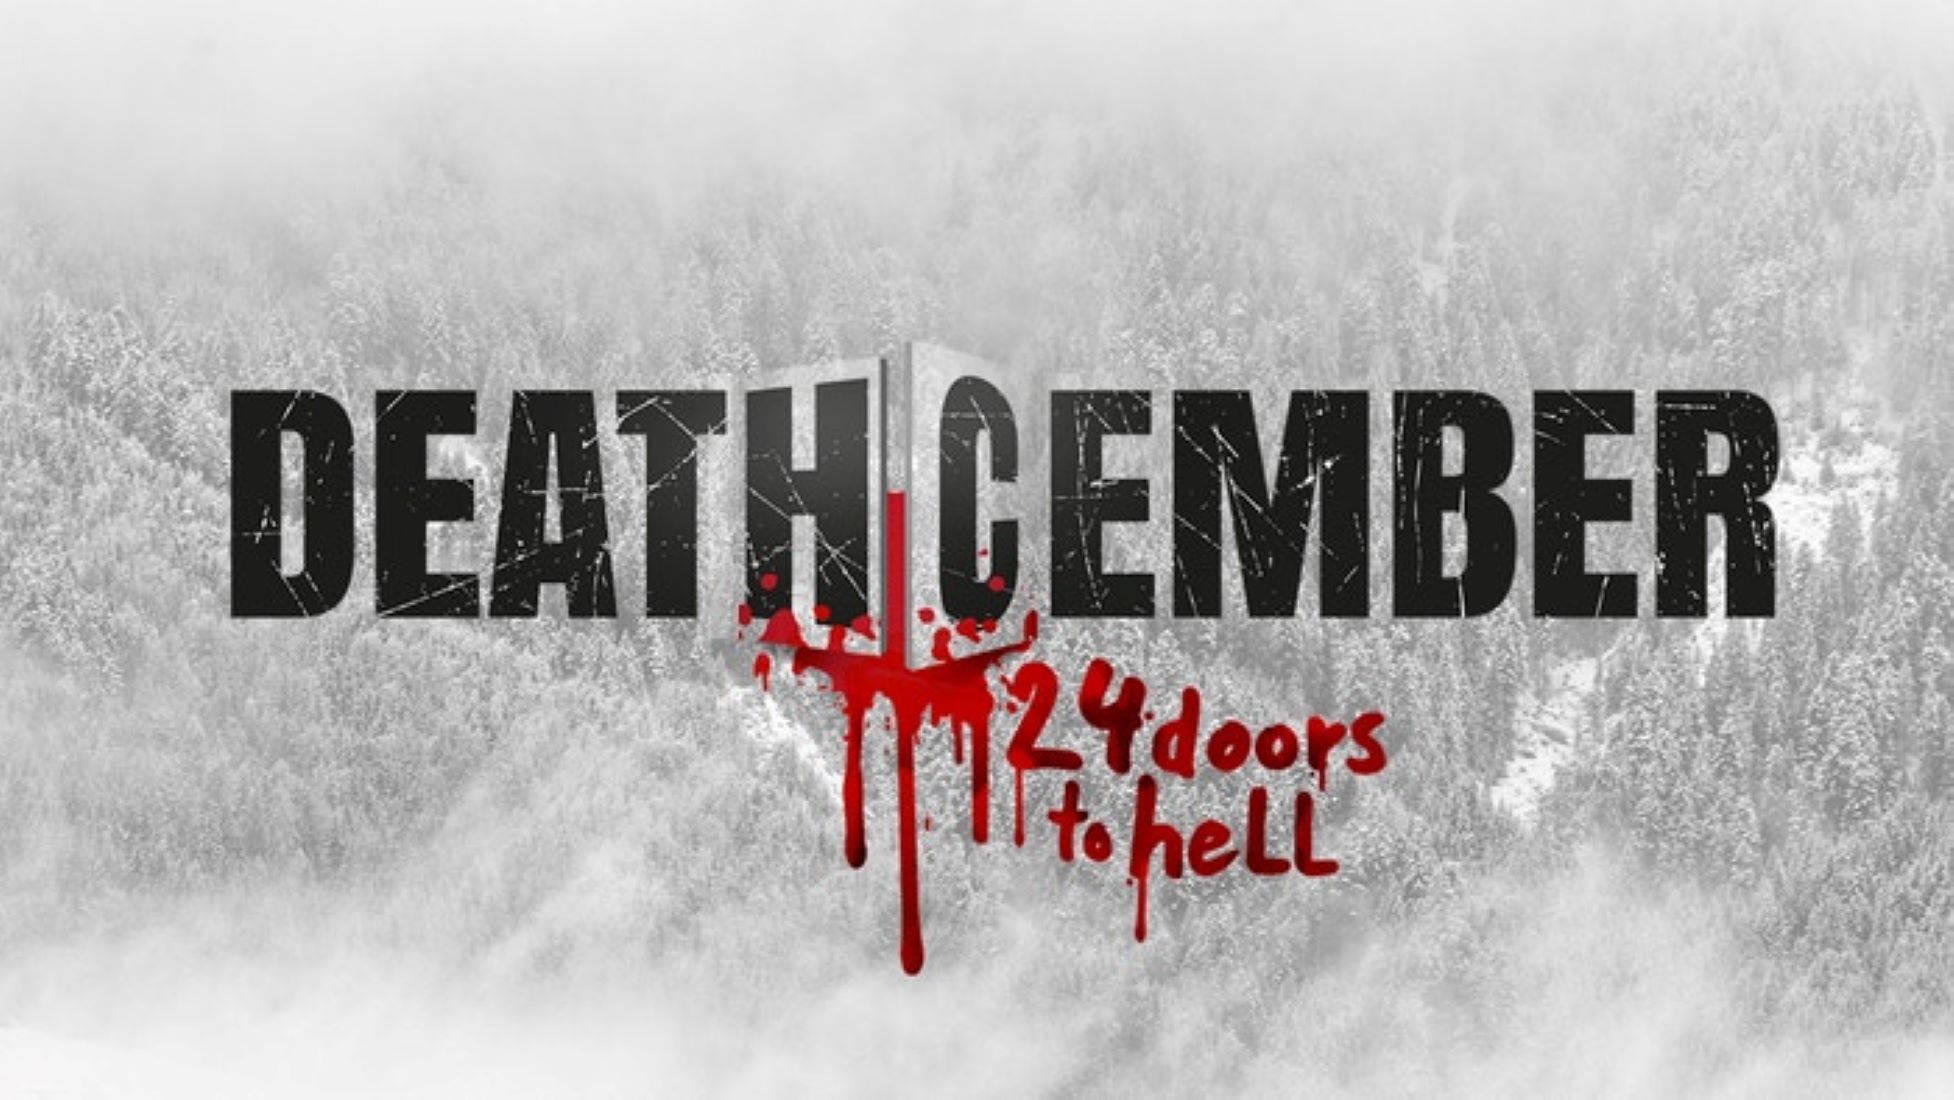 El nuevo tráiler de 'Deathcember' muestra 24 sangrientos días de Navidad